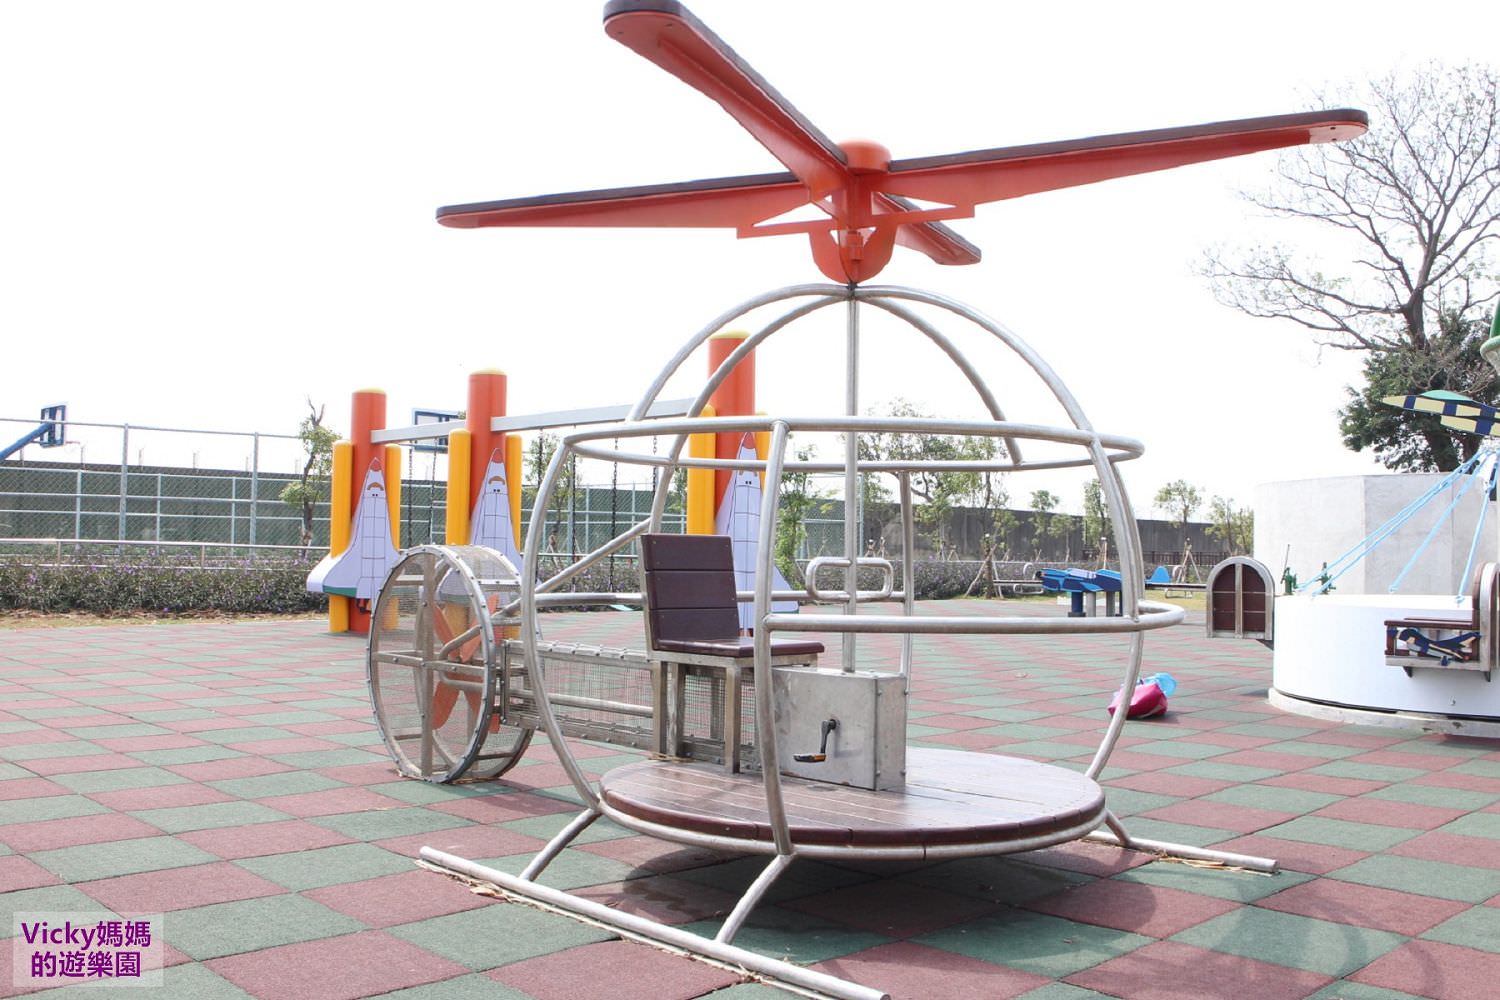 台南親子景點︱台南特色公園︱大恩特色公園：戰鬥機、熱氣球跳床、互動式直升機、太空梭鞦韆、沙坑等飛行器主題公園